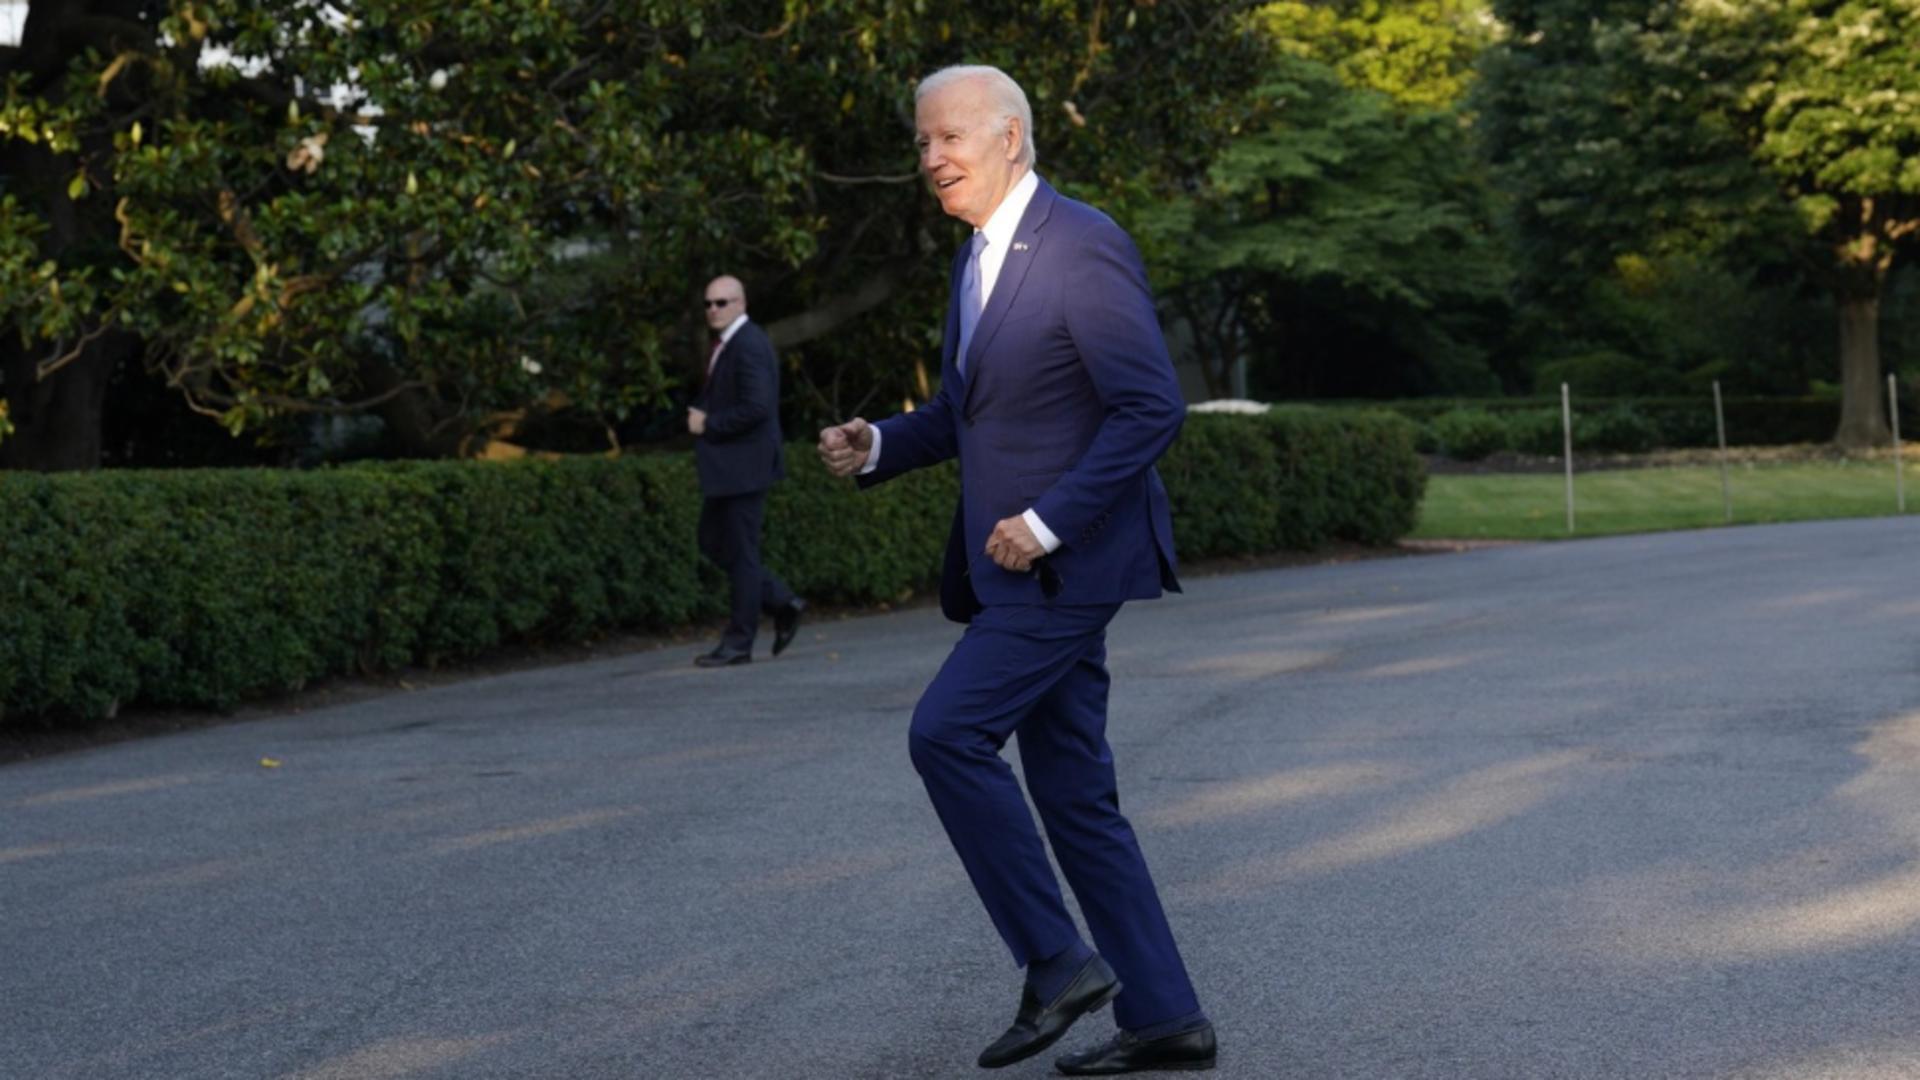 Joe Biden, la bustul gol, pe plajă. O imagine cu care americanii nu sunt prea obișnuiți și o critică FOTO